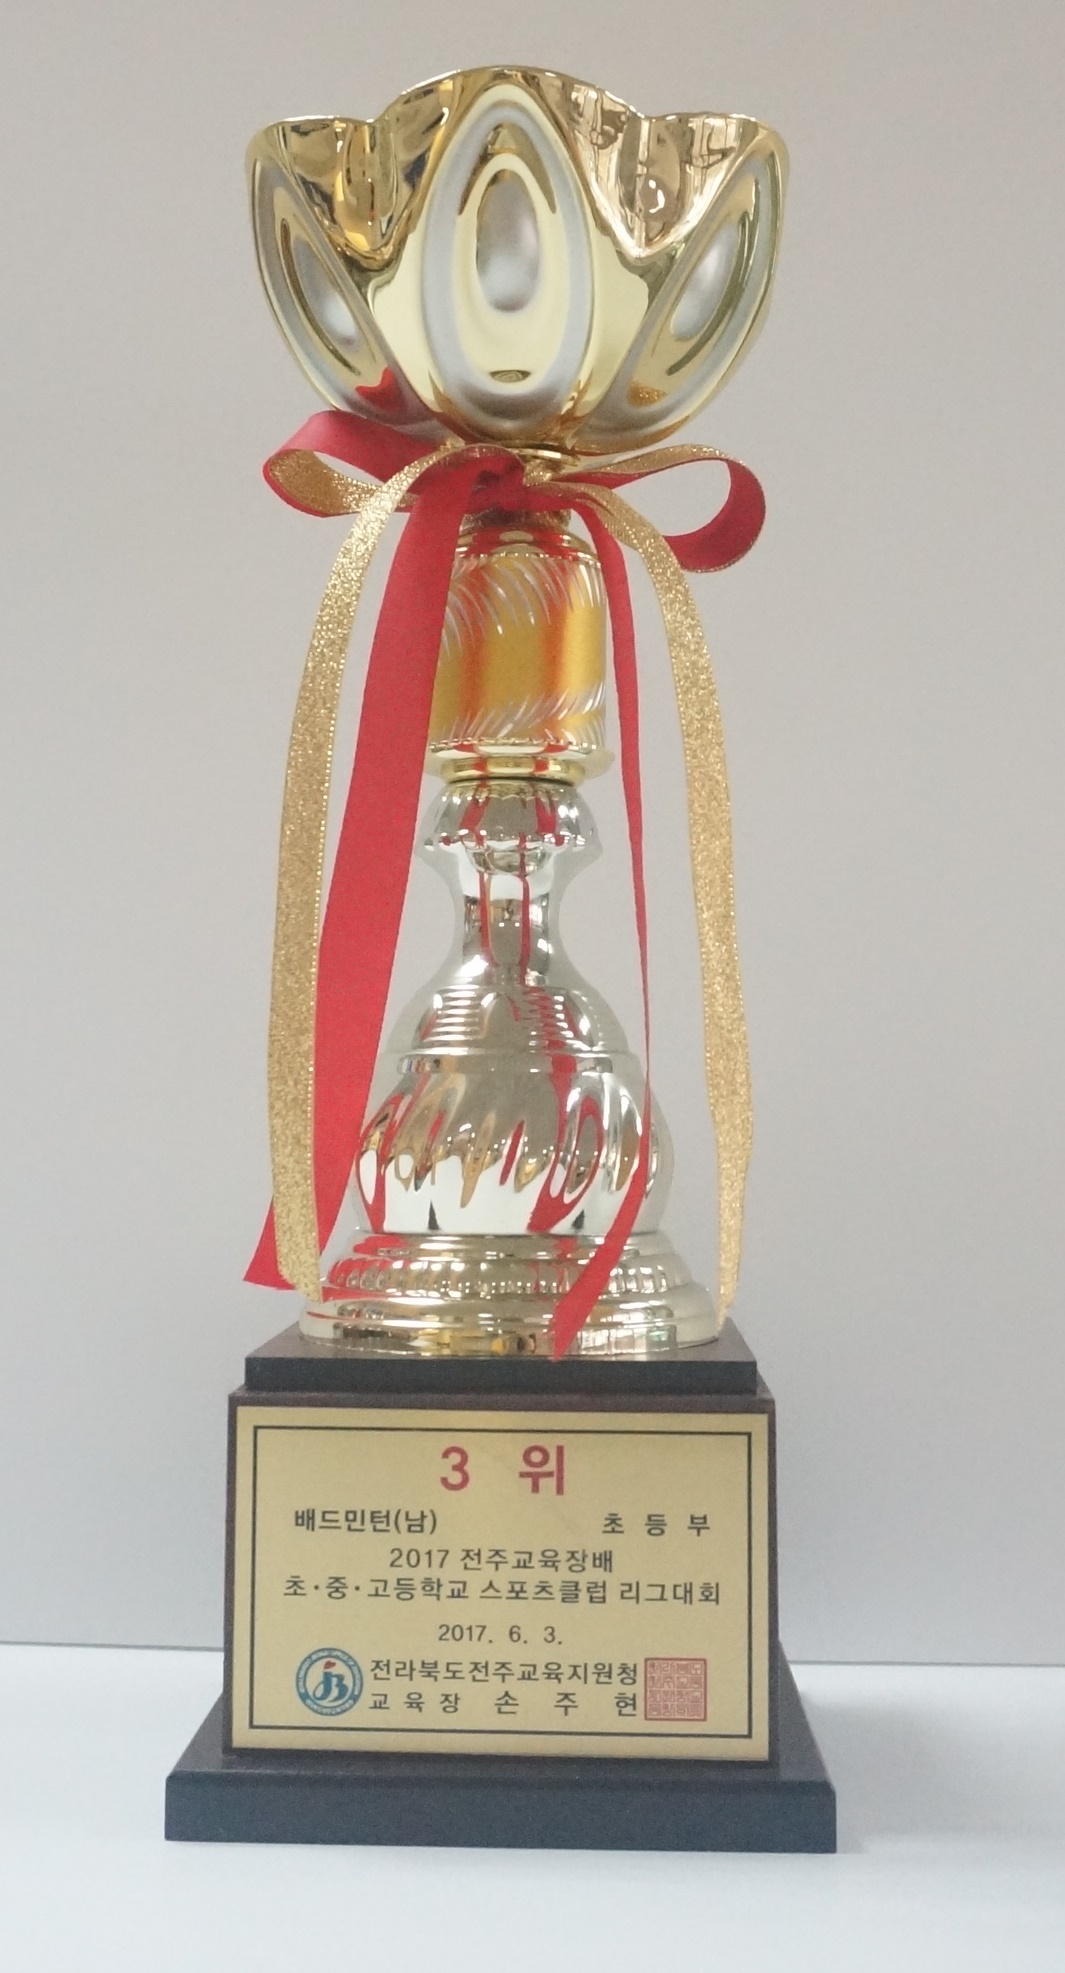 2017-전주교육장배스포츠클럽리그대회(3위-배드민턴(남))